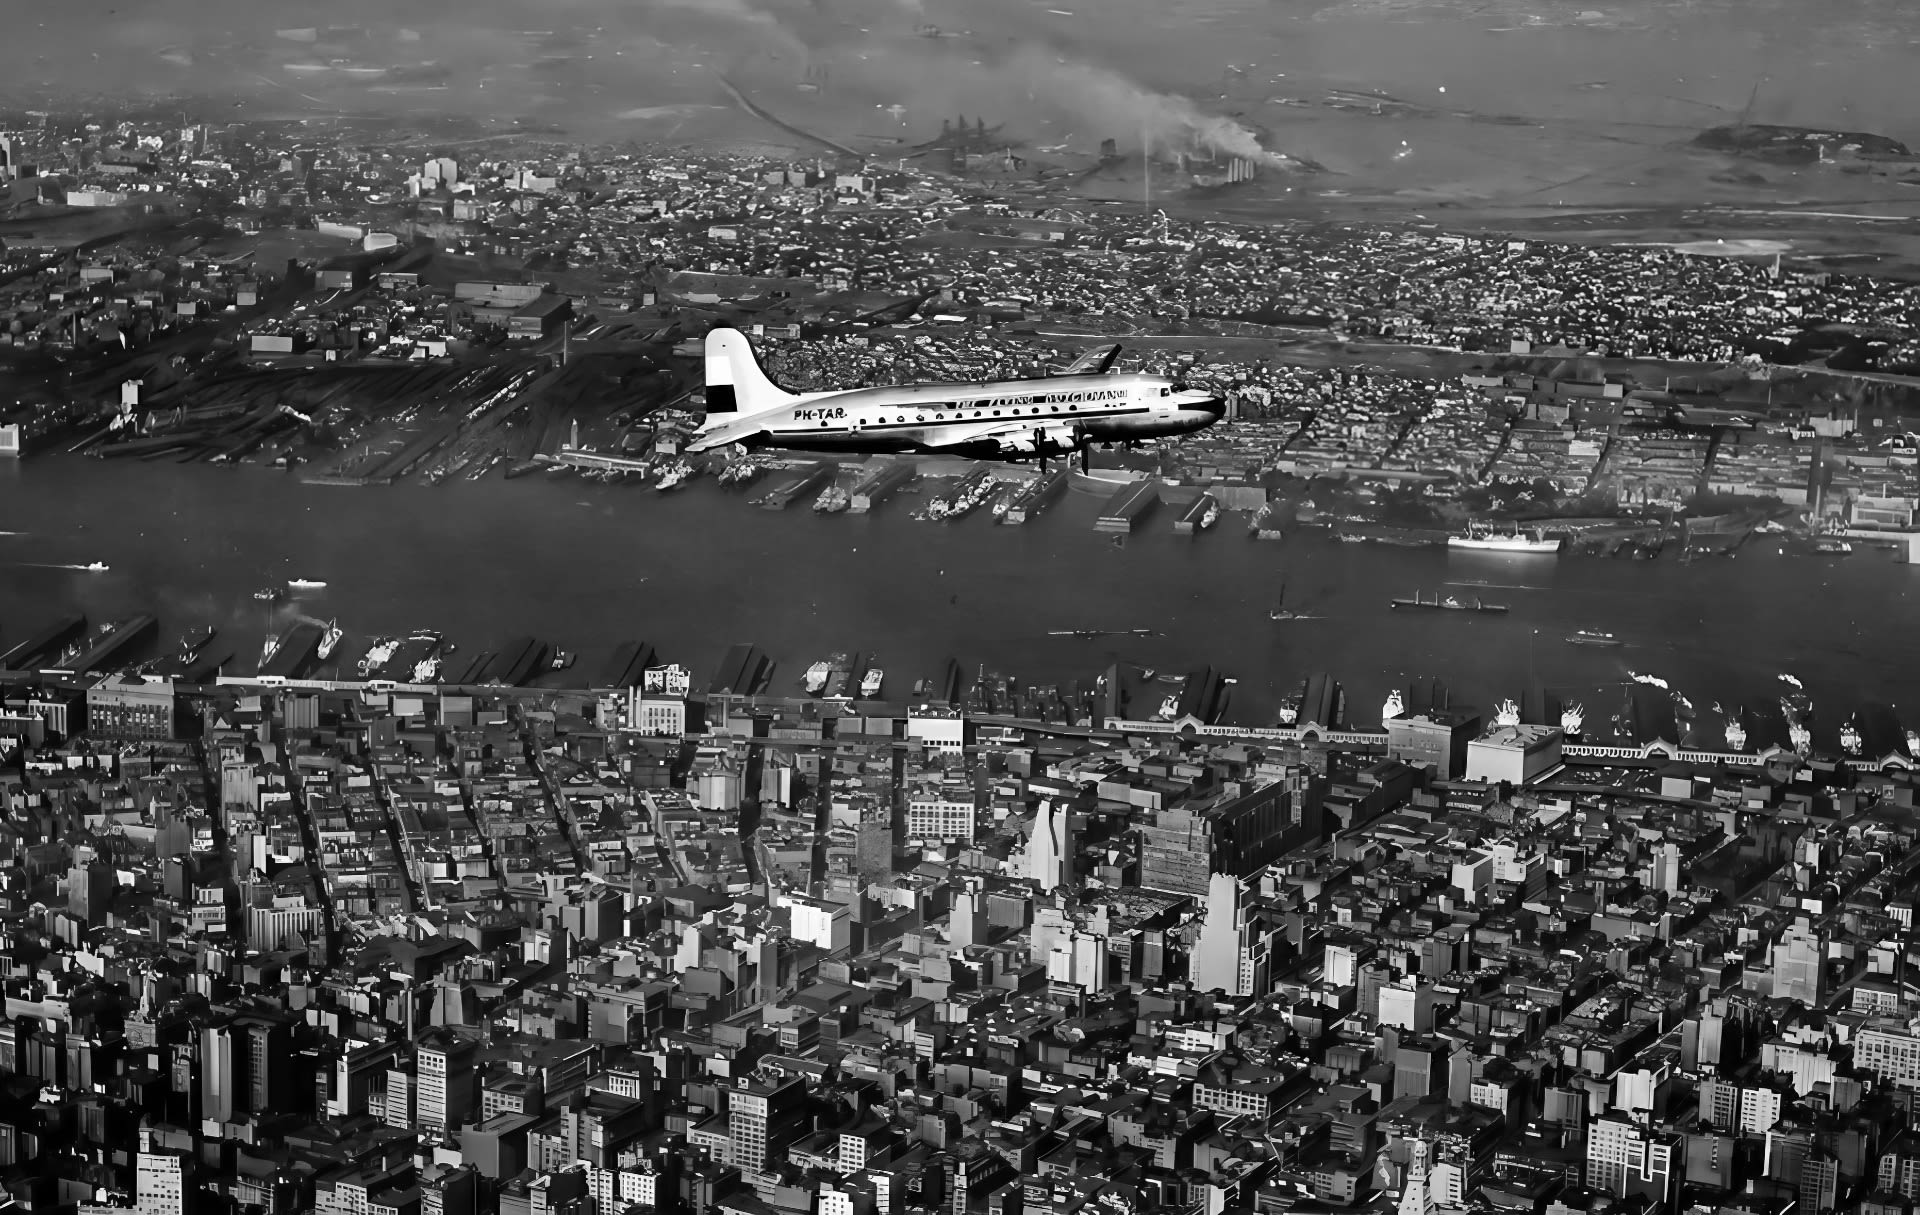 5/21/1946: KLM's Maiden Transatlantic Flight